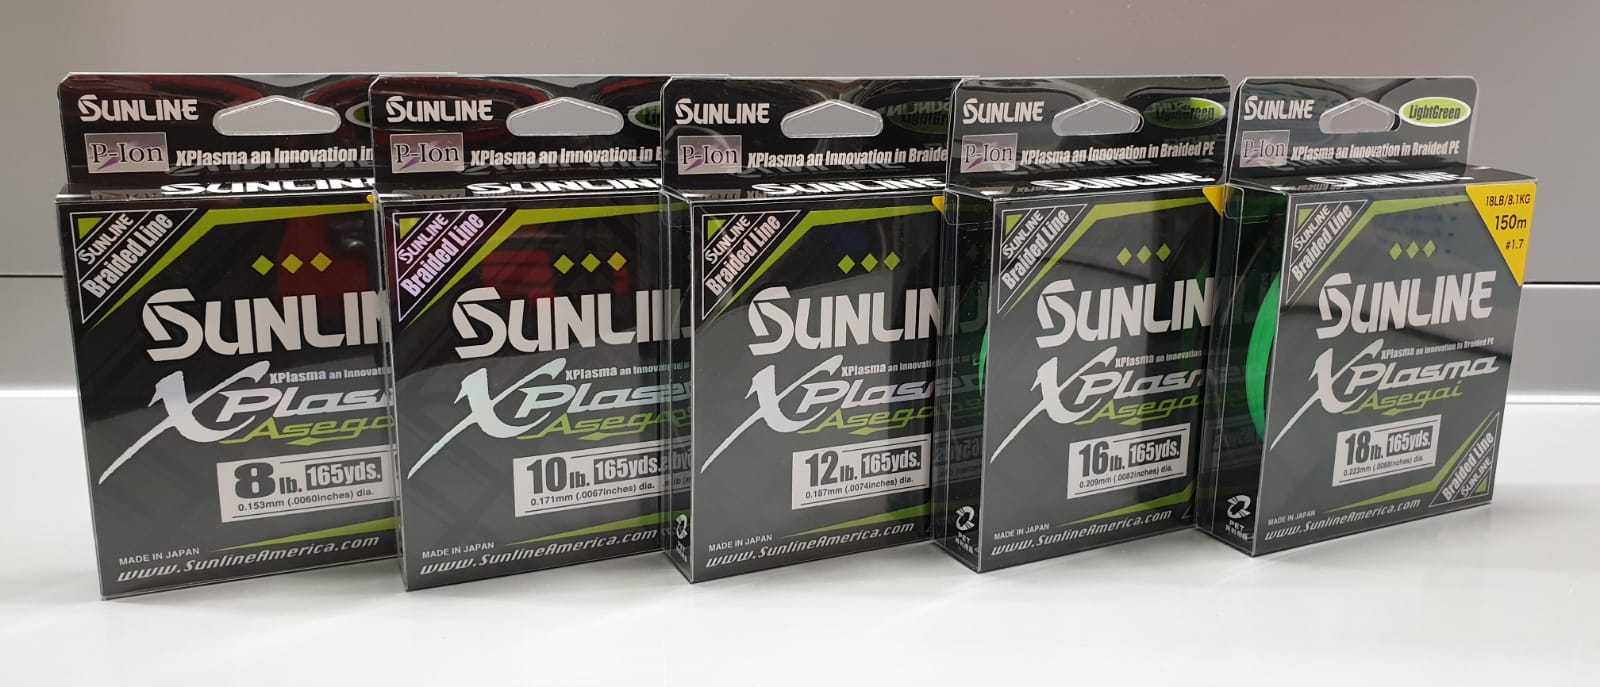 Sunline XPlasma Asegai PE 8lb 10lb 12lb 16lb 18lb Light Green, SUNLINE, Marken / Hersteller